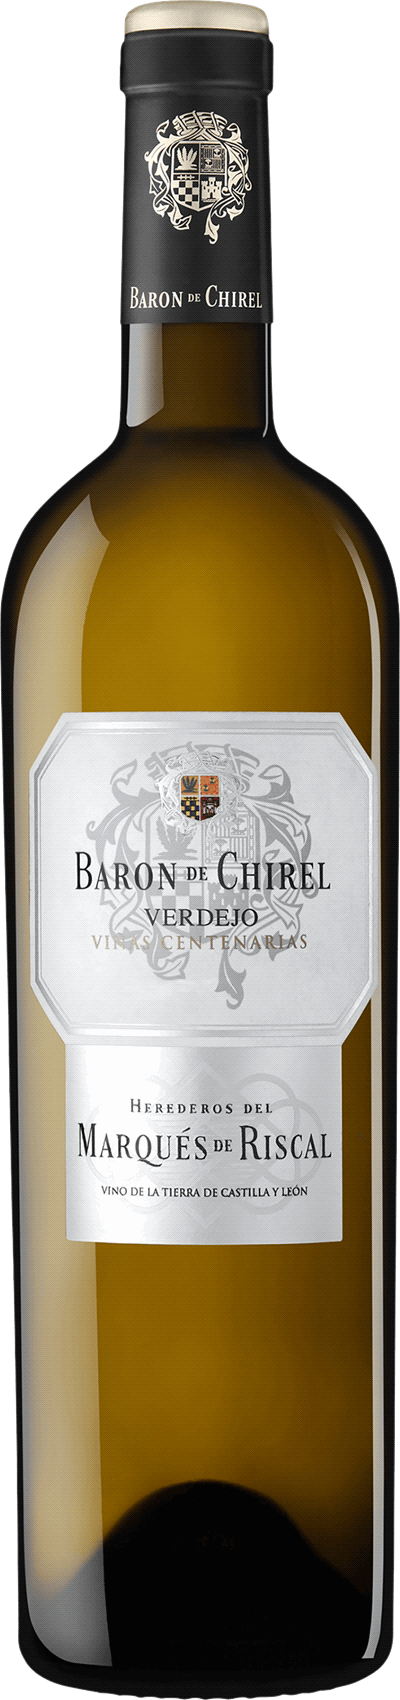 Baron de Chirel Verdejo, 2018